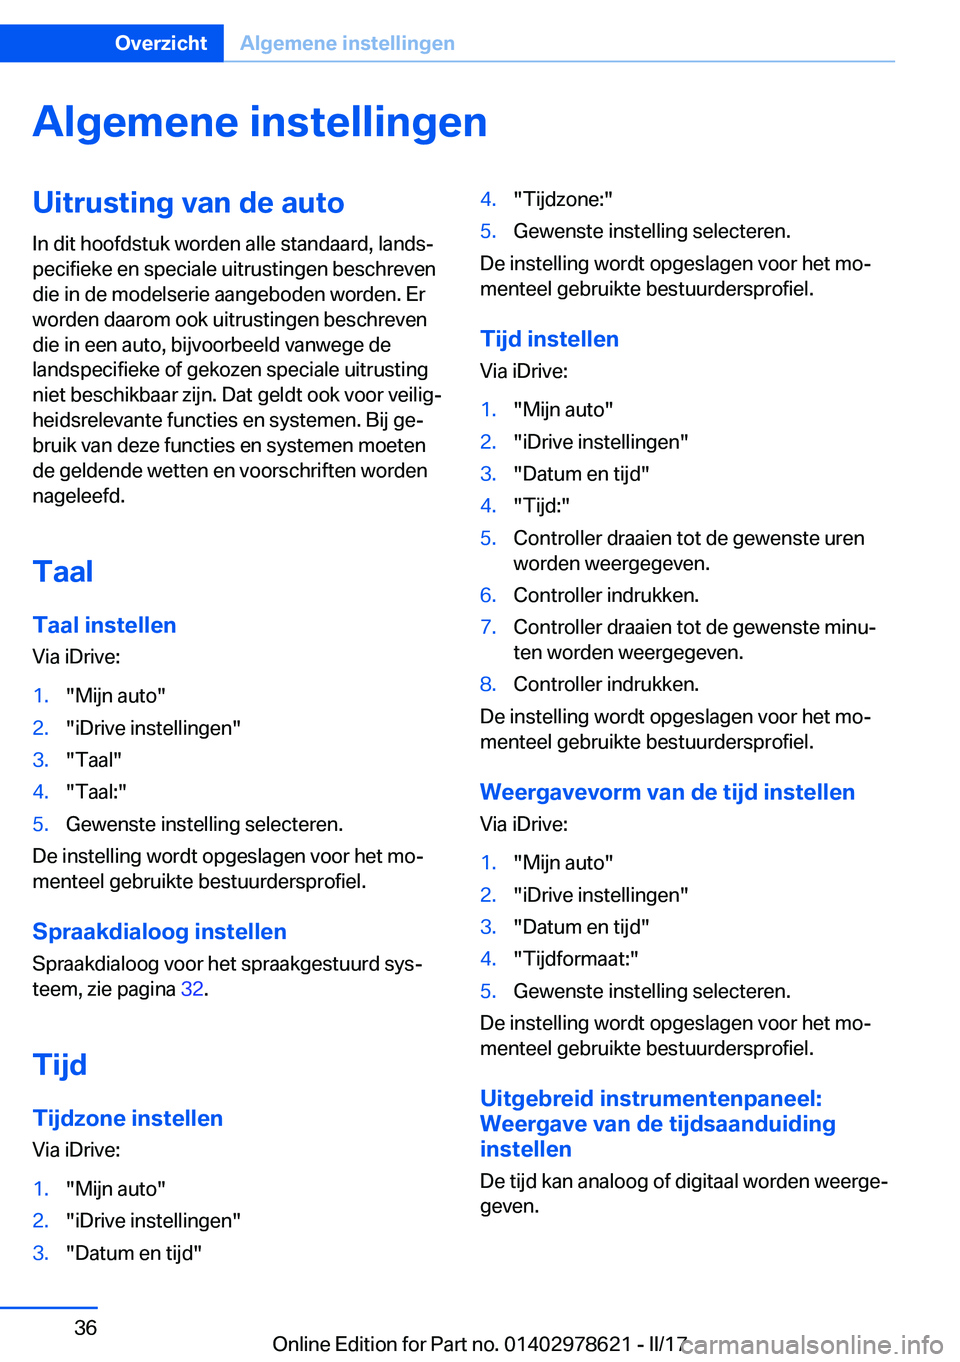 BMW 7 SERIES 2018  Instructieboekjes (in Dutch) �A�l�g�e�m�e�n�e��i�n�s�t�e�l�l�i�n�g�e�n�U�i�t�r�u�s�t�i�n�g��v�a�n��d�e��a�u�t�o
�I�n� �d�i�t� �h�o�o�f�d�s�t�u�k� �w�o�r�d�e�n� �a�l�l�e� �s�t�a�n�d�a�a�r�d�,� �l�a�n�d�sj
�p�e�c�i�f�i�e�k�e� 